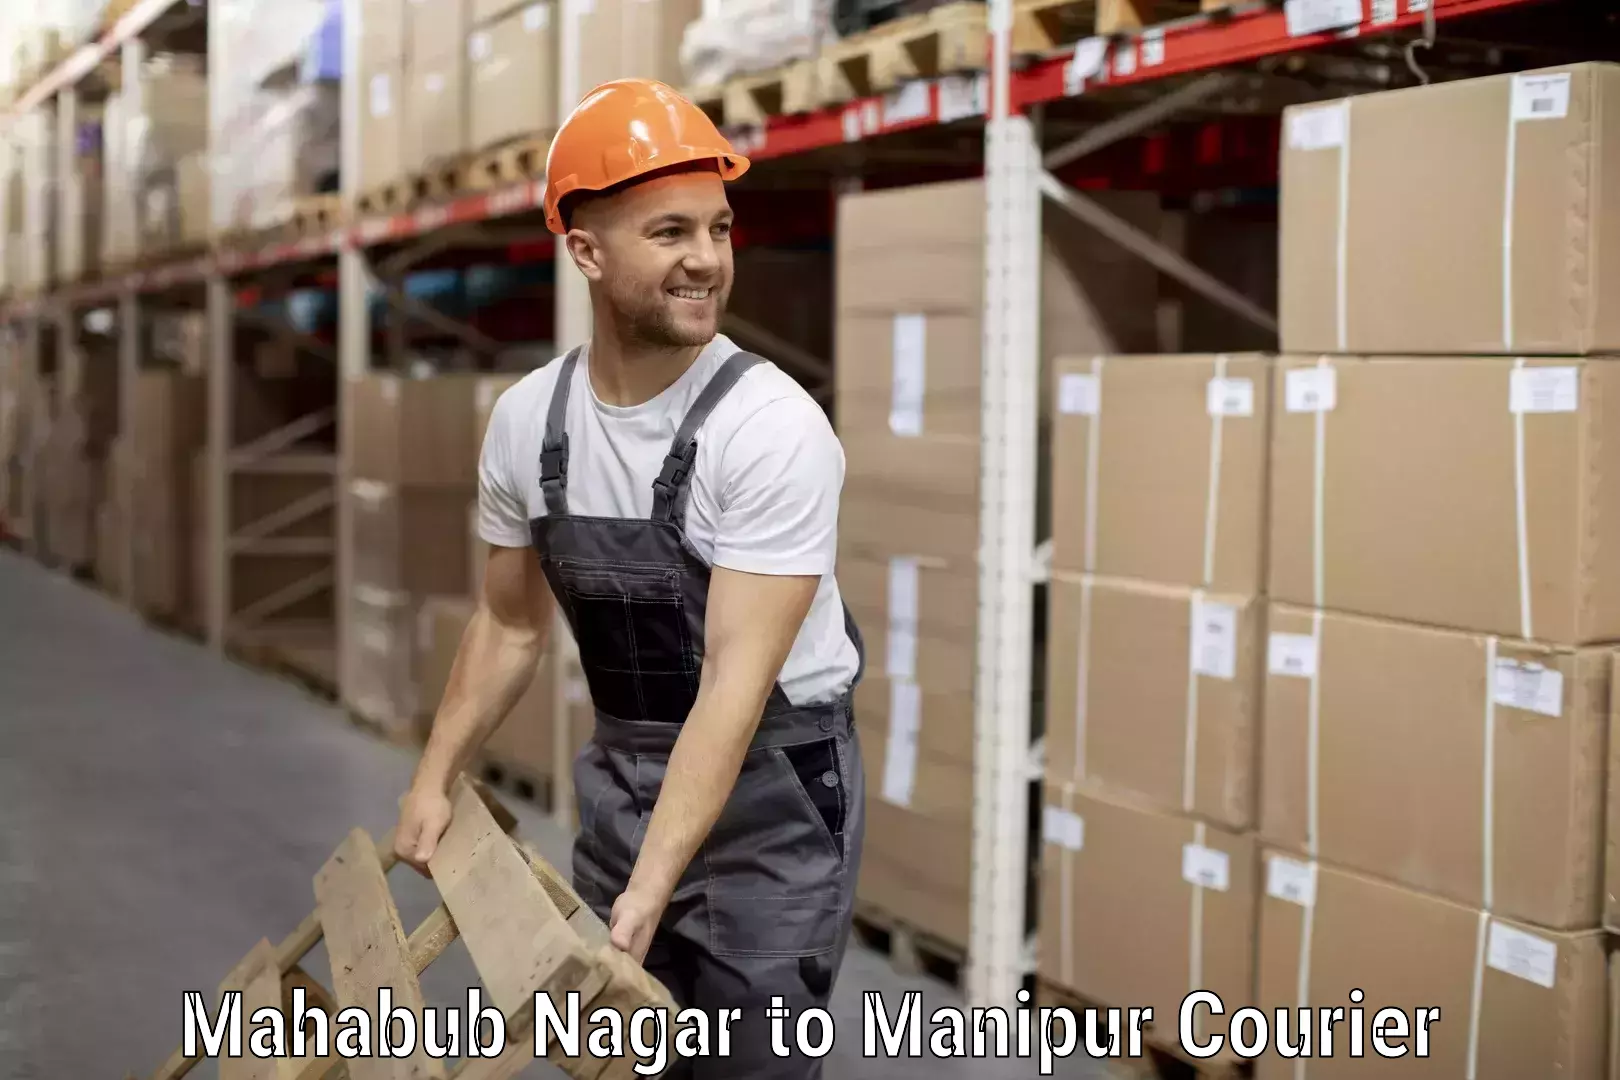 Baggage courier FAQs Mahabub Nagar to Manipur